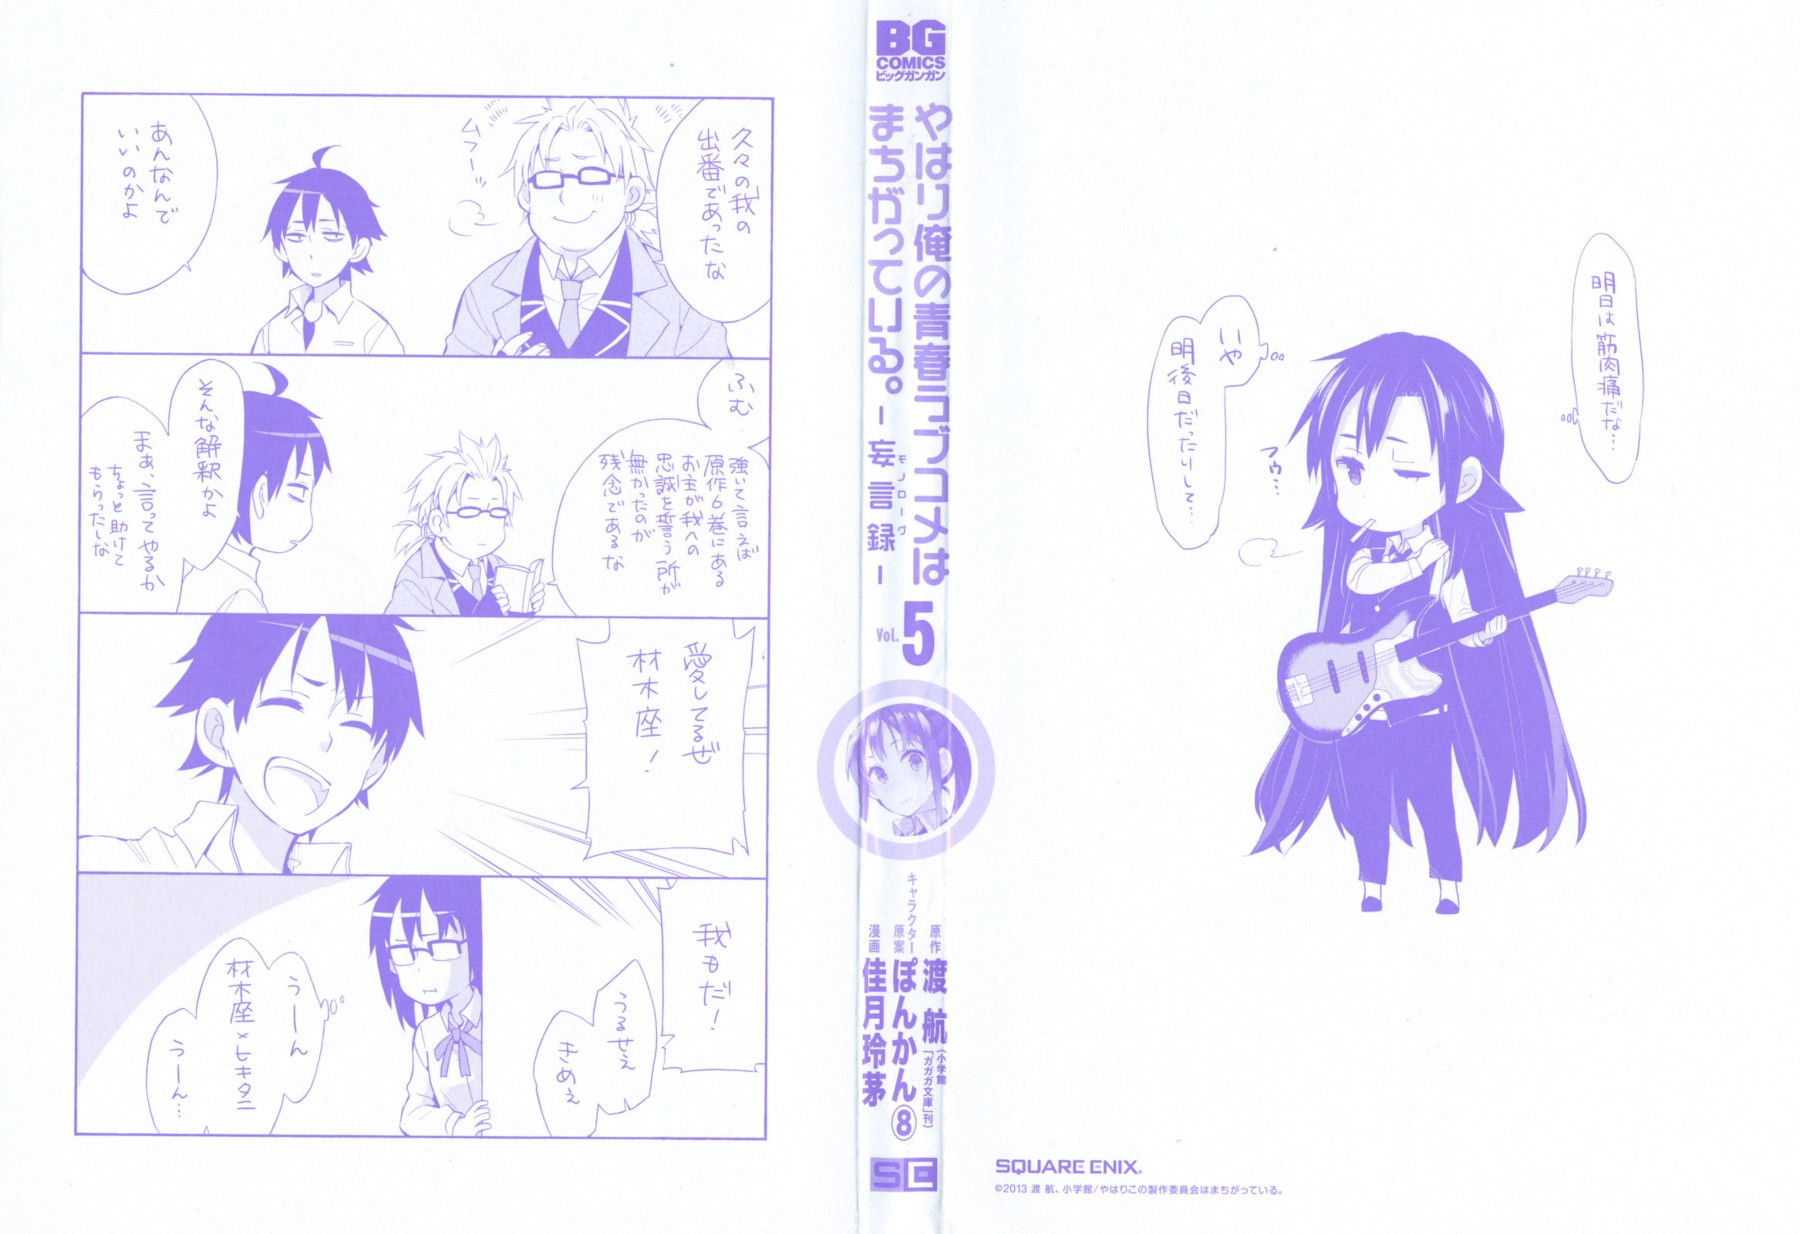 Yahari Ore no Seishun Rabukome wa Machigatte Iru. - Monologue - Chapter 22 - Page 2